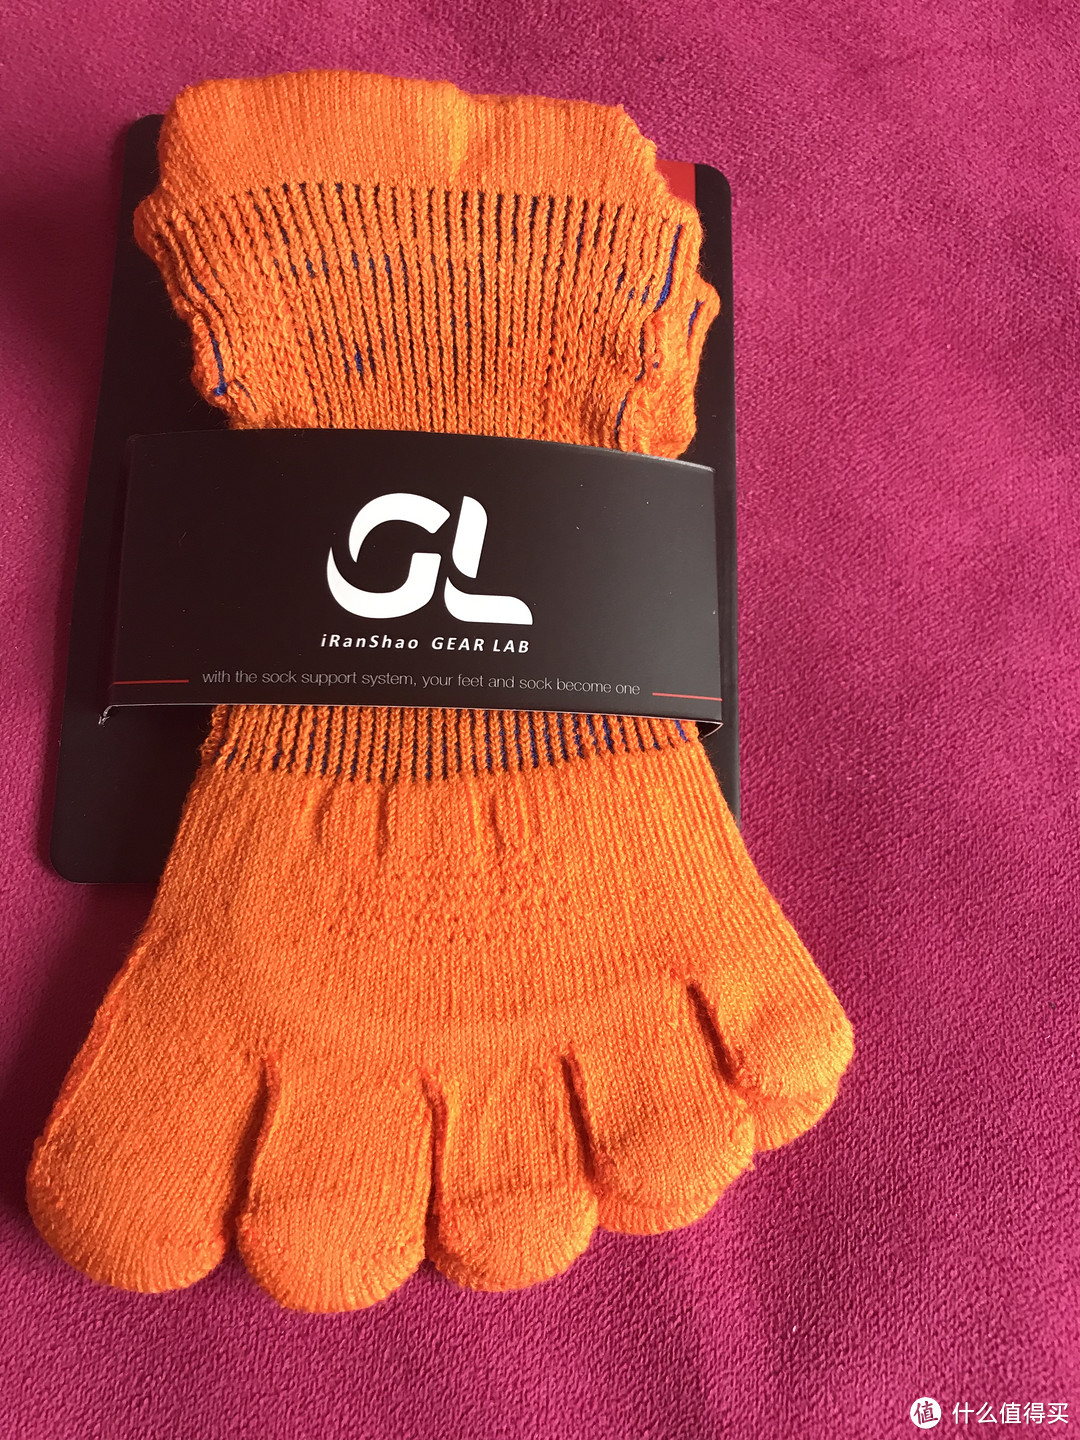 弹性十足——GEARLAB燃烧装备实验室3D压力五指袜2.0众测体验